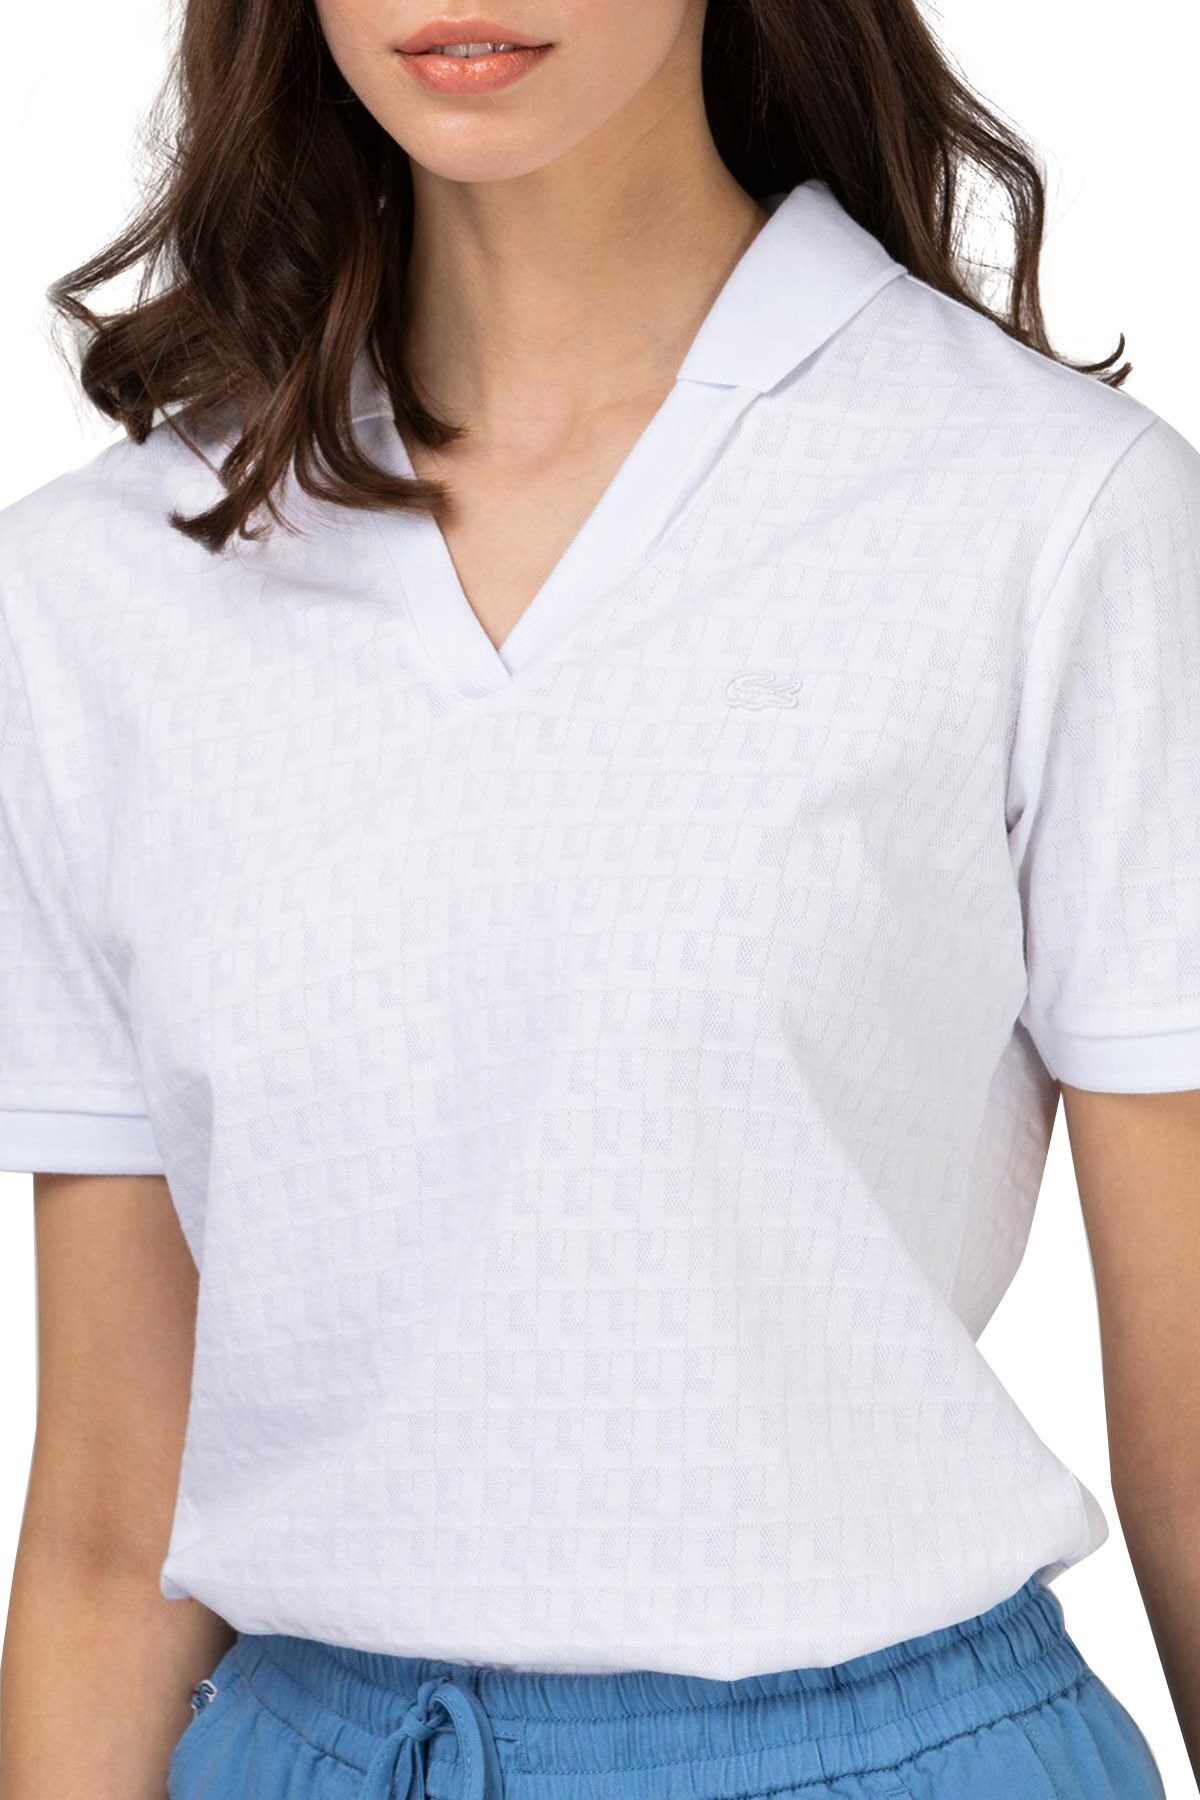 Lacoste Slim Fit Desenli T Shirt Bayan Polo PF0110 10B BEYAZ